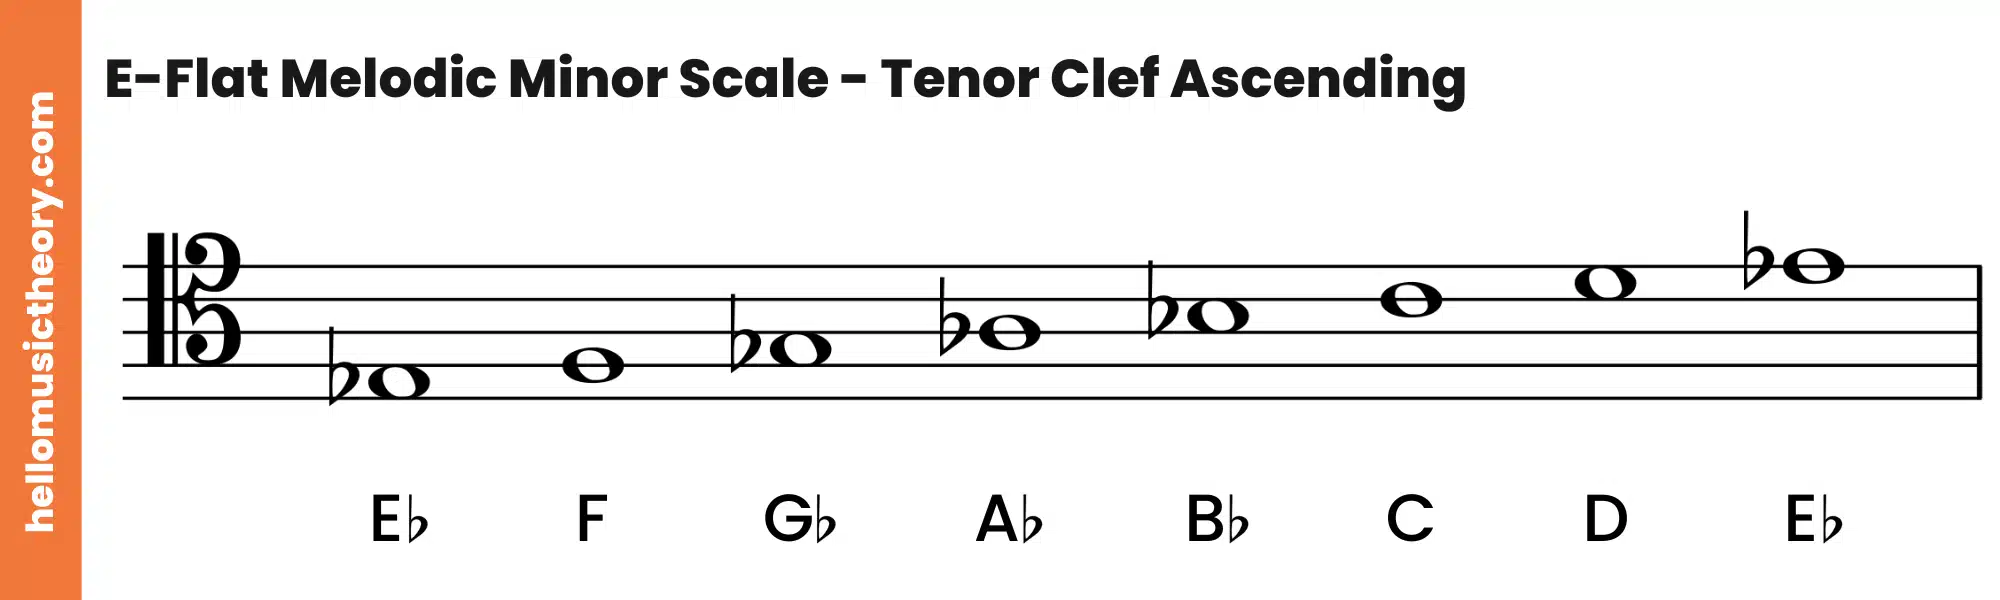 E-Flat Melodic Minor Scale Tenor Clef Ascending